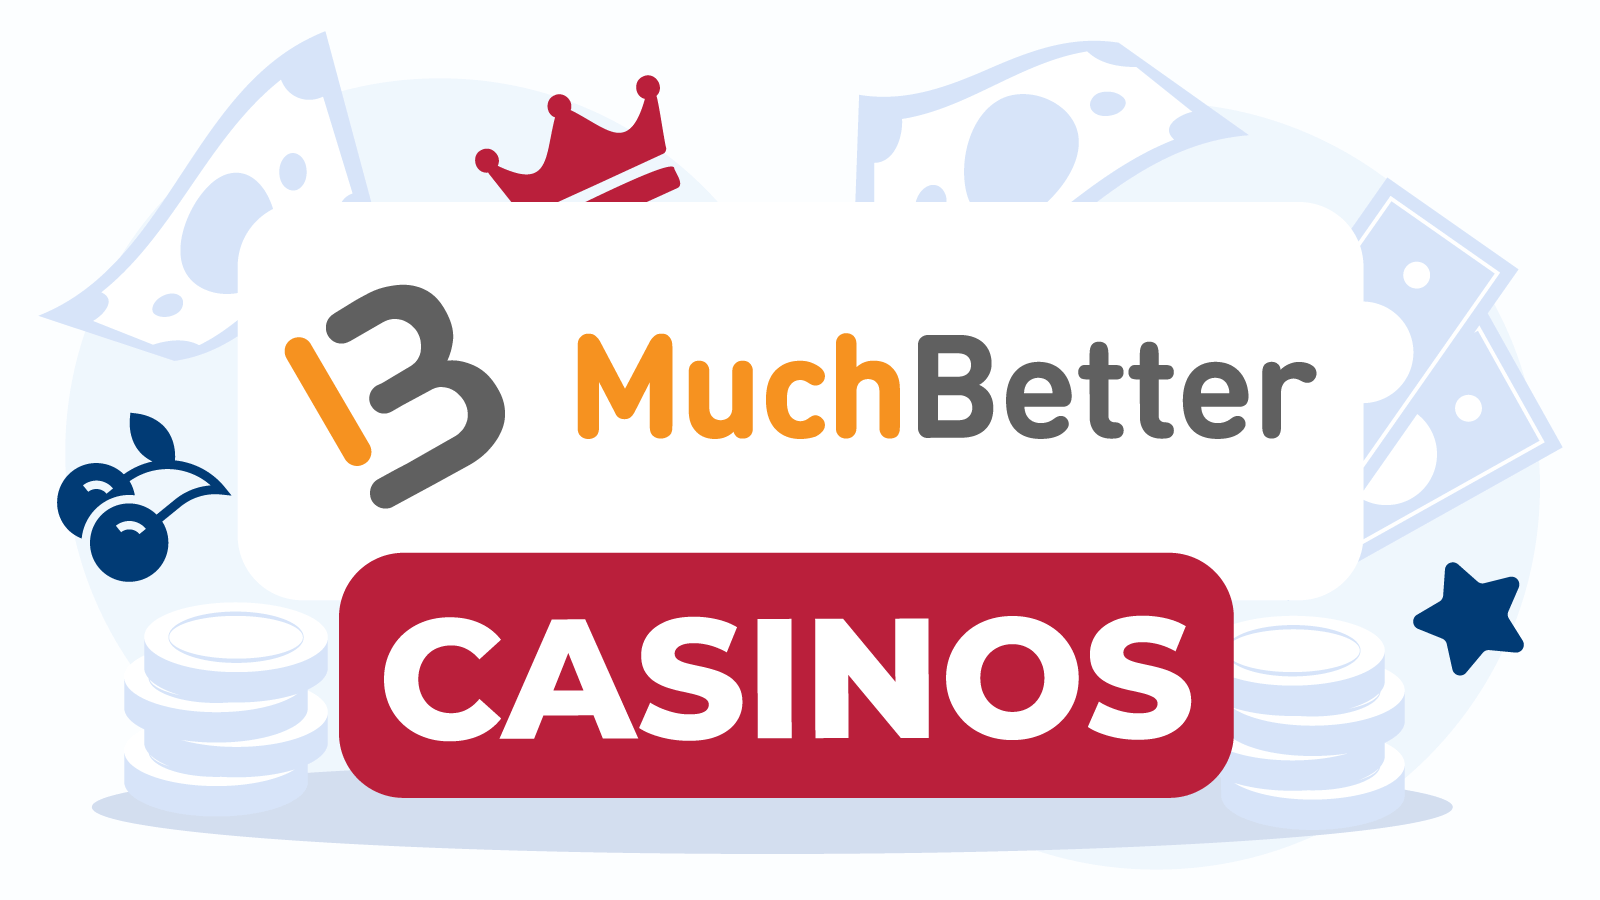 Muchbetter Casinos